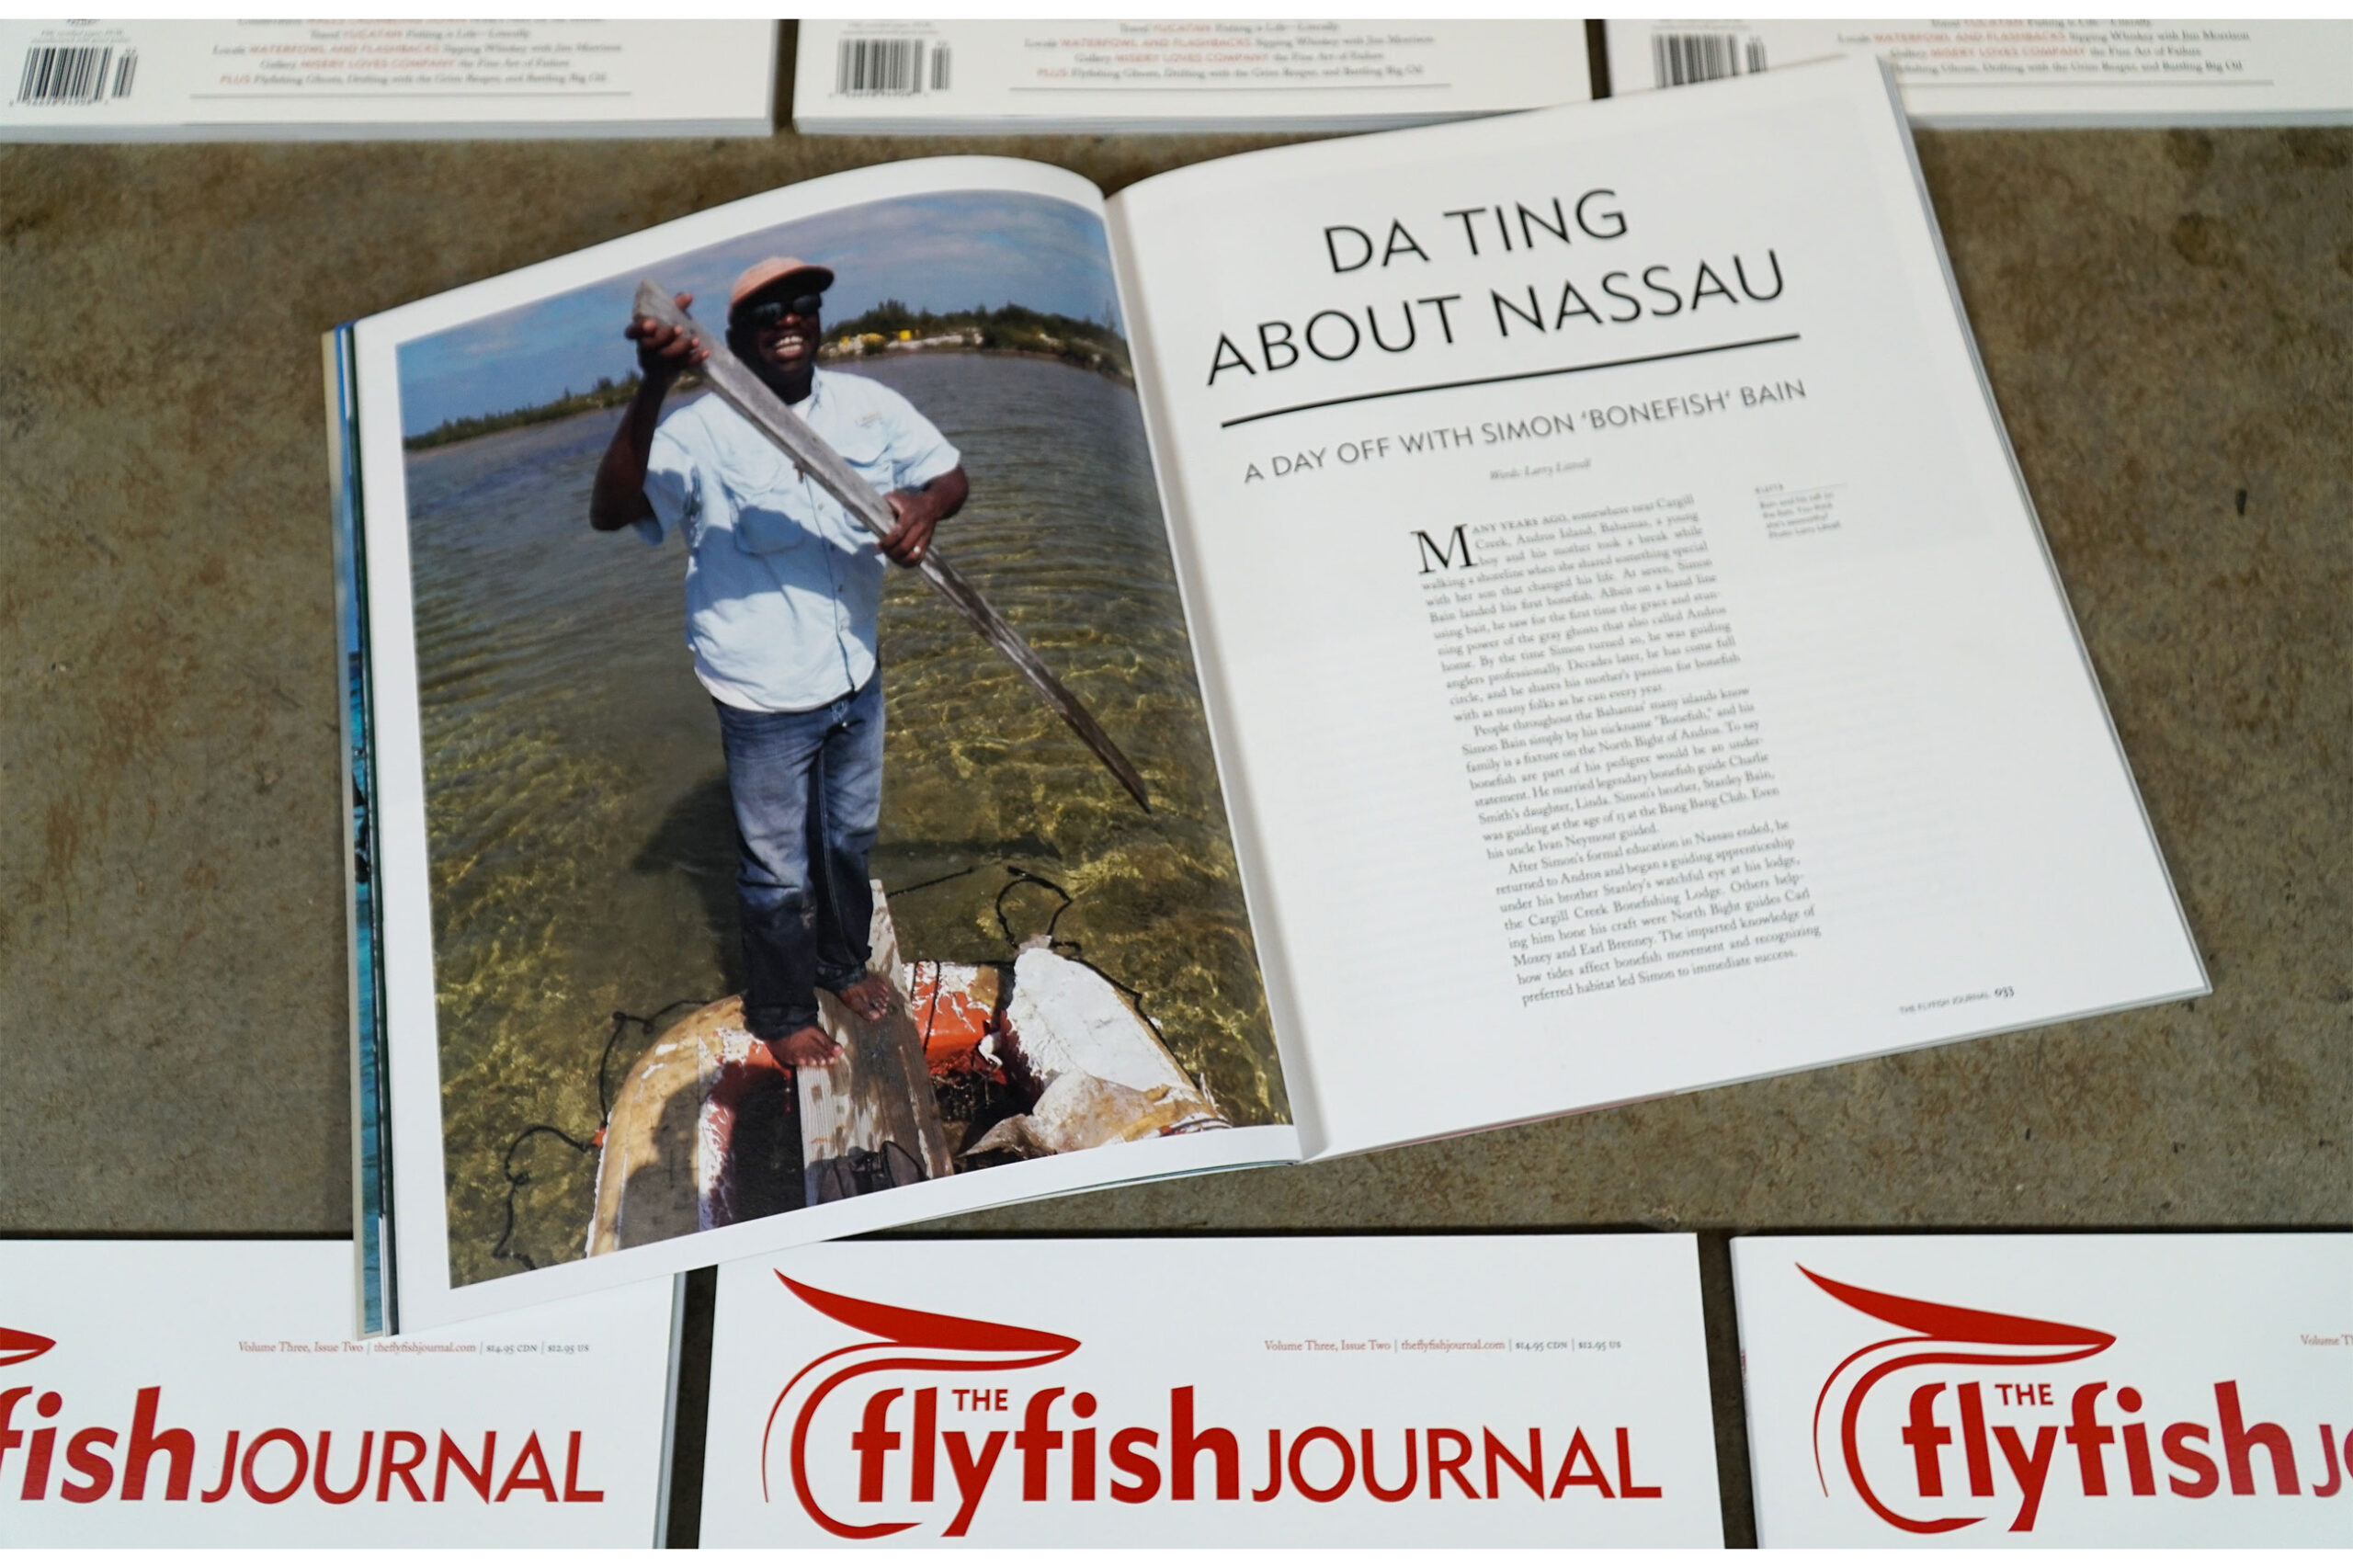 The Flyfish Journal Volume 3 Issue 2 Feature Da Tine About Nassau